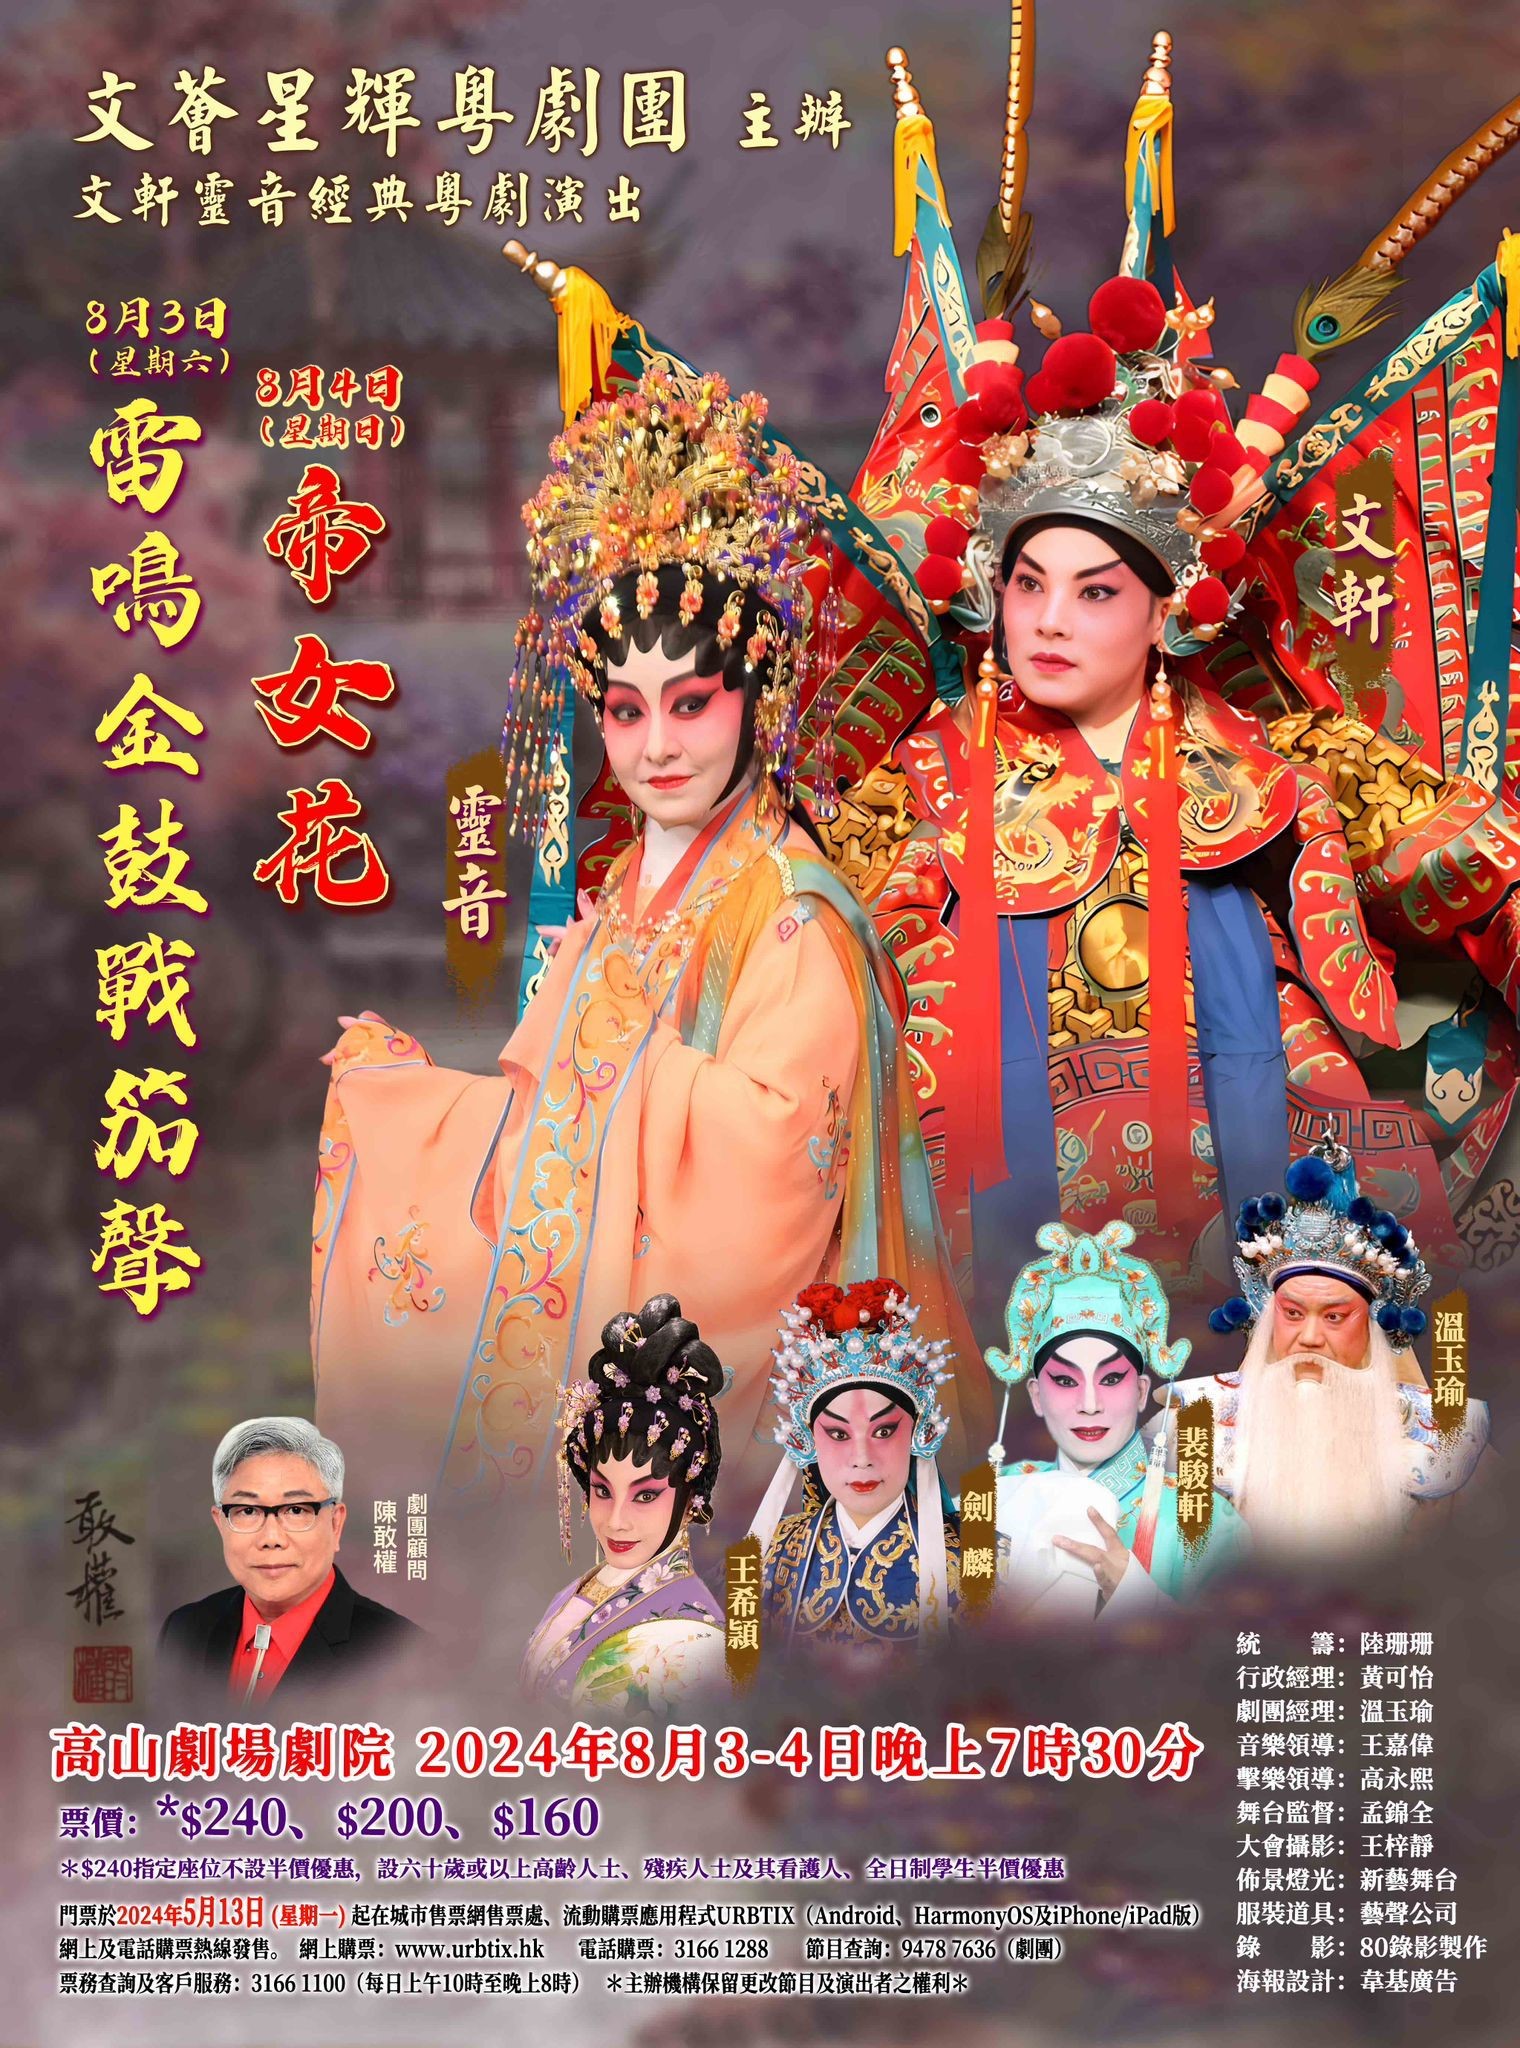 文軒靈音經典粵劇演出——《雷鳴金鼓戰笳聲》及《帝女花》